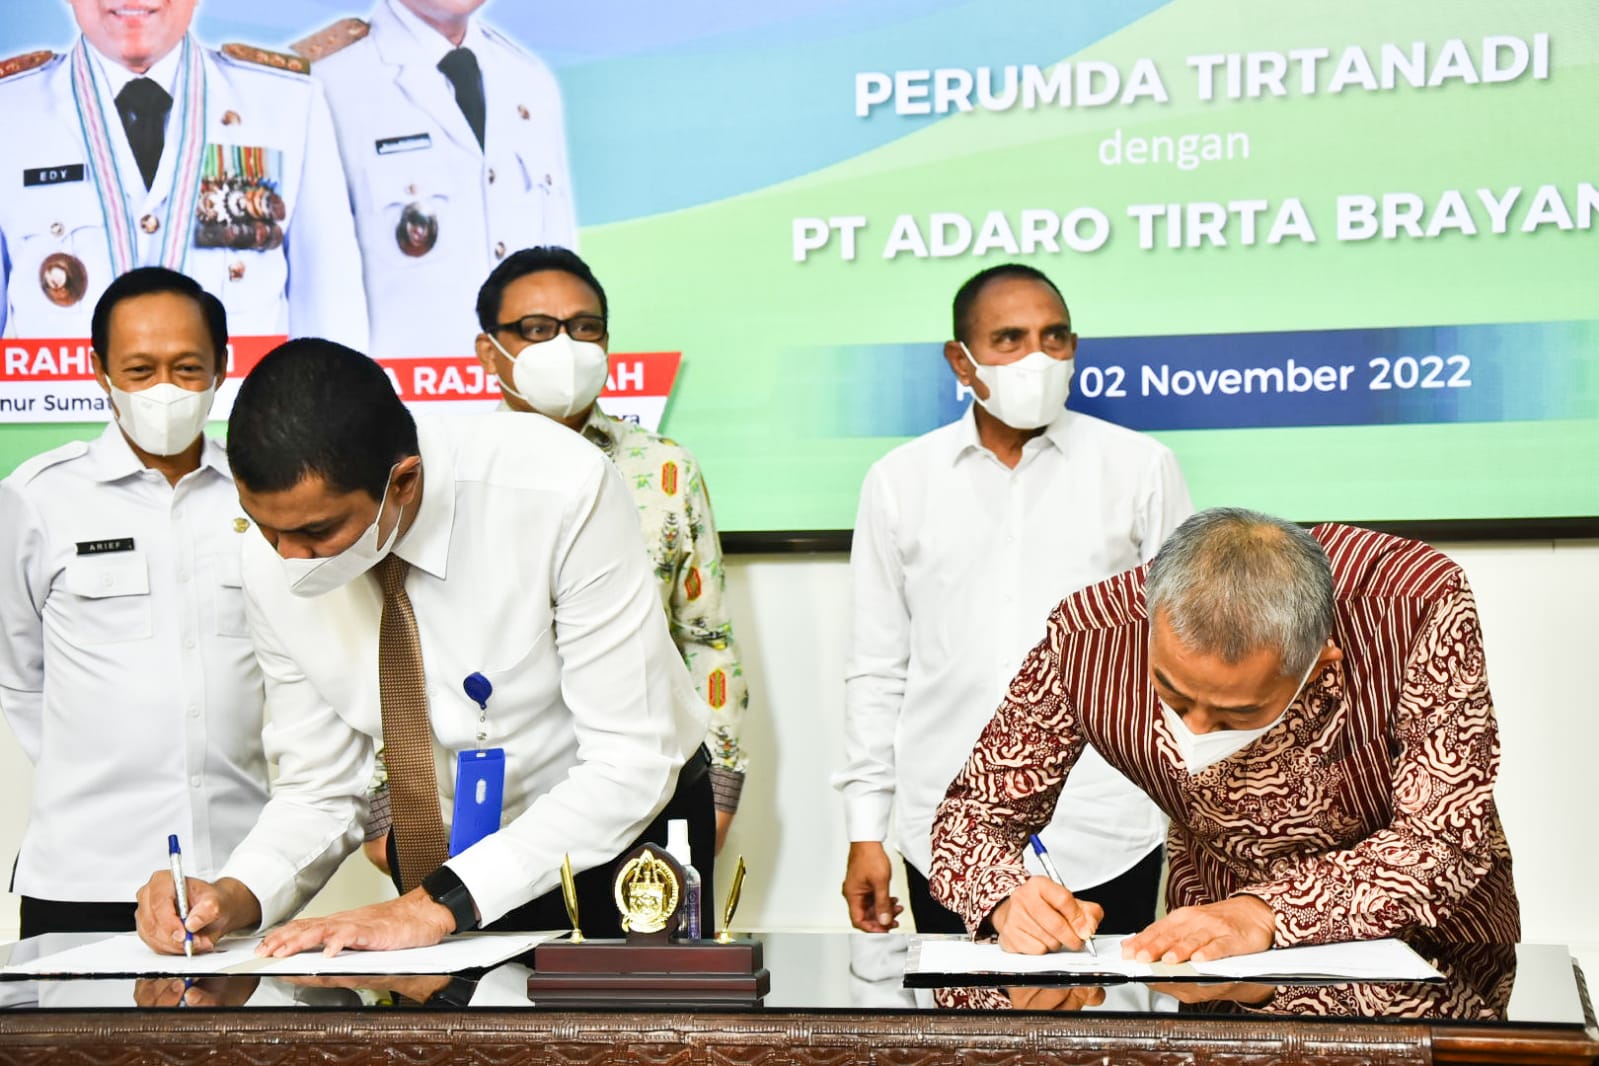 Tingkatkan Pelayanan Air Minum di Kota Medan, Perumda Tirtanadi Menandatangani Perjanjian Kerjasama Dengan PT. Adaro Tirta Brayan